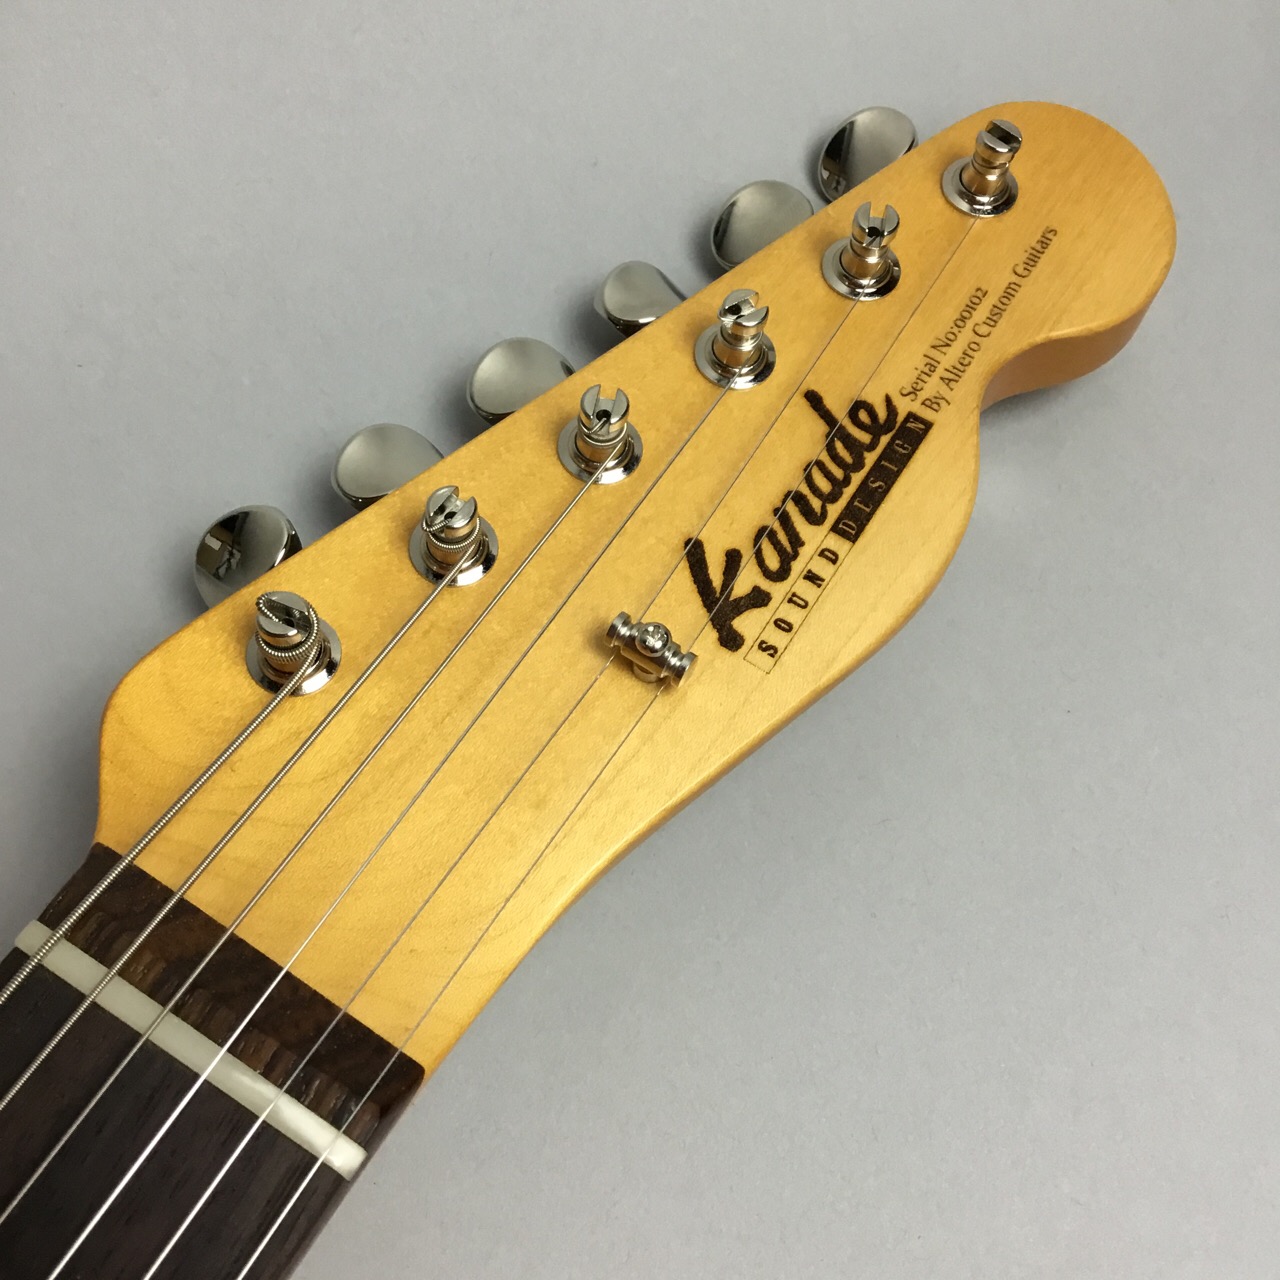 こんにちは、ギター担当の廣田です。滋賀県に拠点を置くギター工房Altero Custom Guitarsがプロデュースするブランド『Kanade SOUND DESIGN』のギターが3本入荷いたしました！半年近く待ちましてやっと来ました！人気のため当店では入荷してすぐに売れちゃうギターなんです！では […]